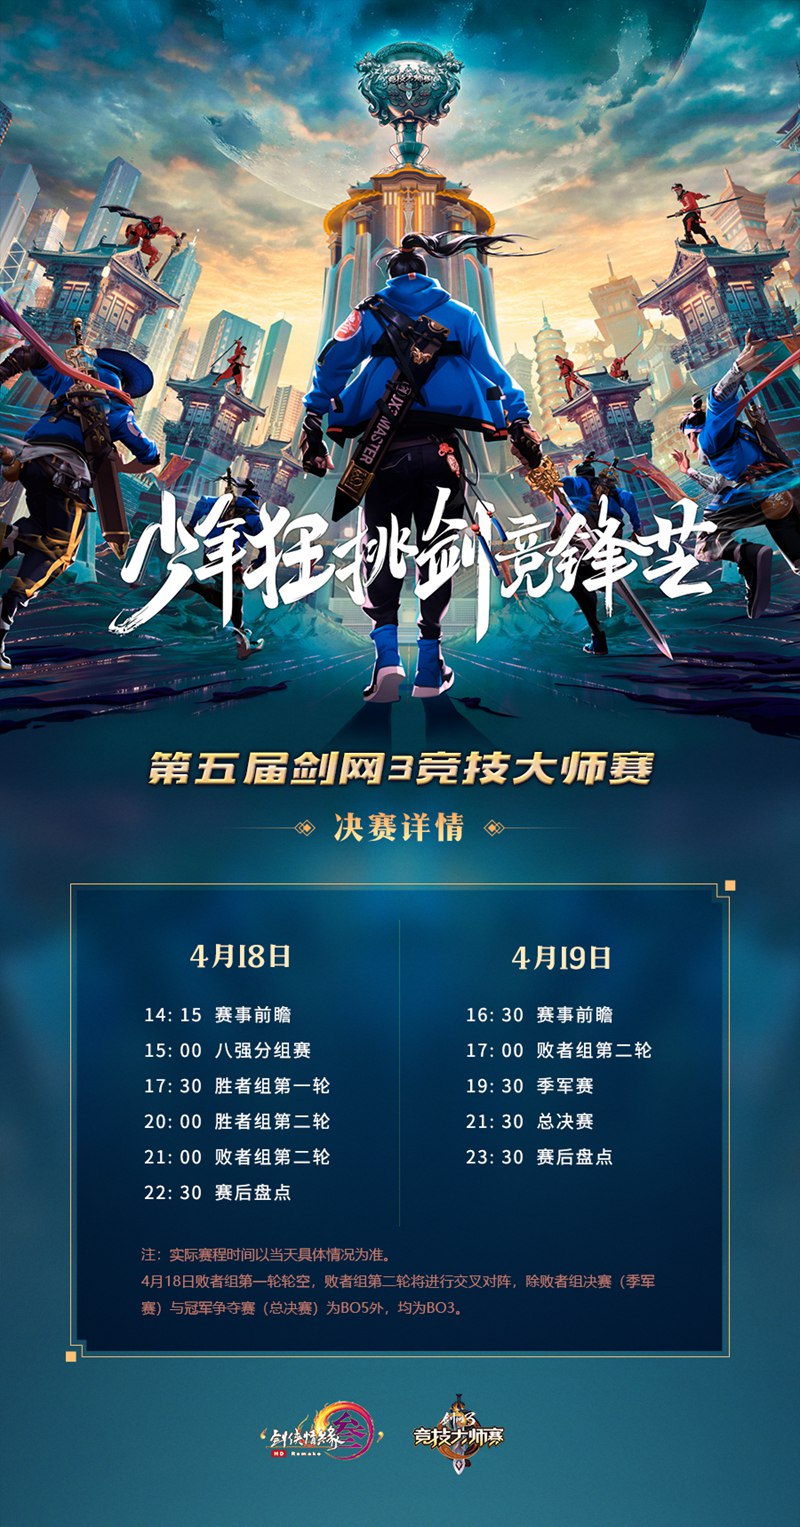 第五届《剑网3》大师赛应援视频燃情发布 巅峰之战明日开启